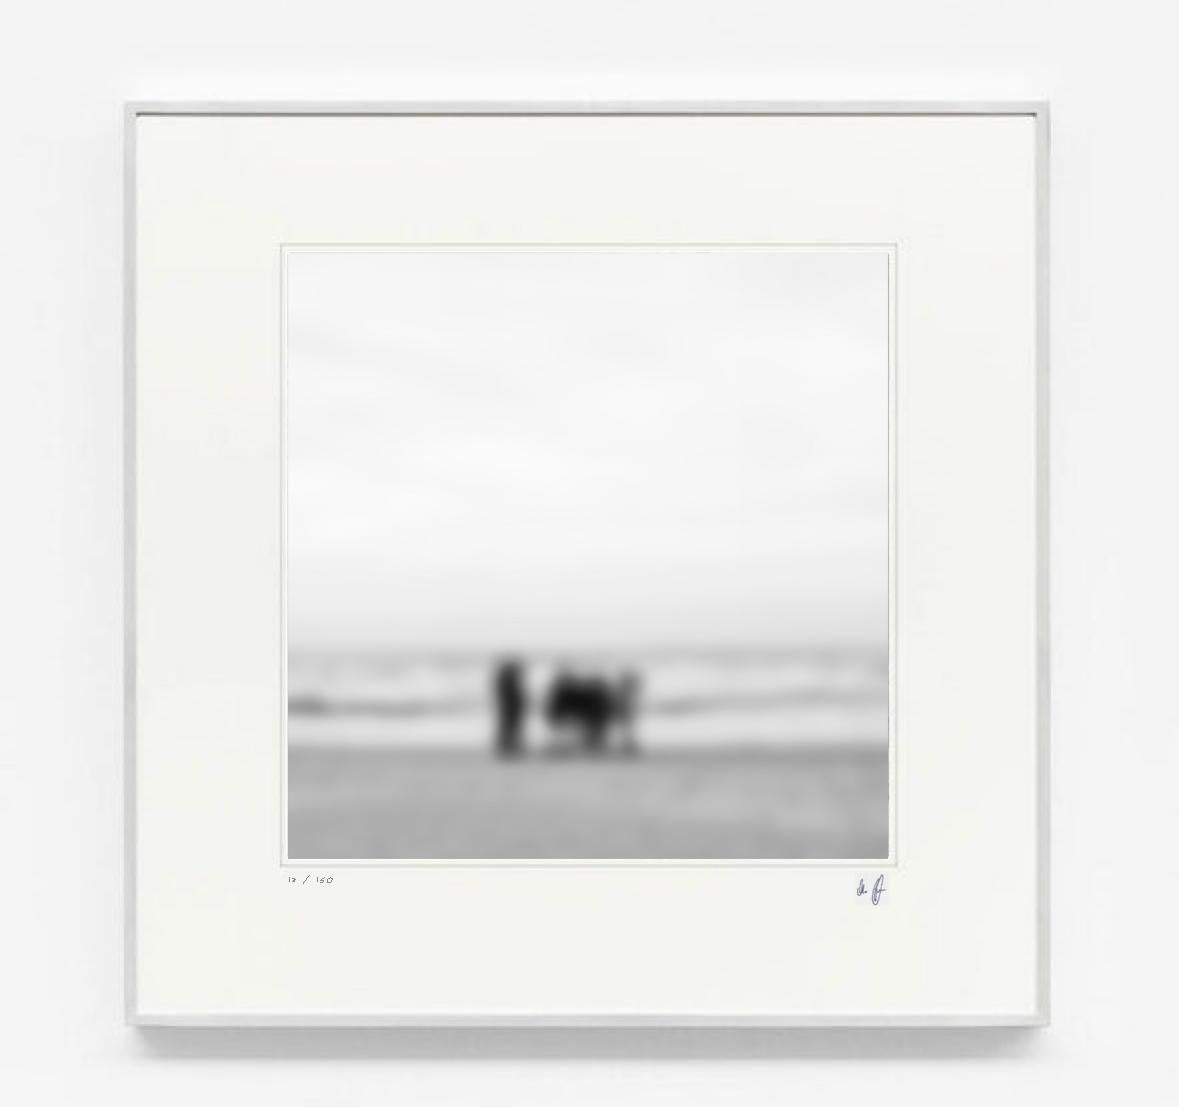 Michael Götze Landscape Photograph – People on the Beach - zeitgenössische abstrakte Fotografie von Strandleben und Meer